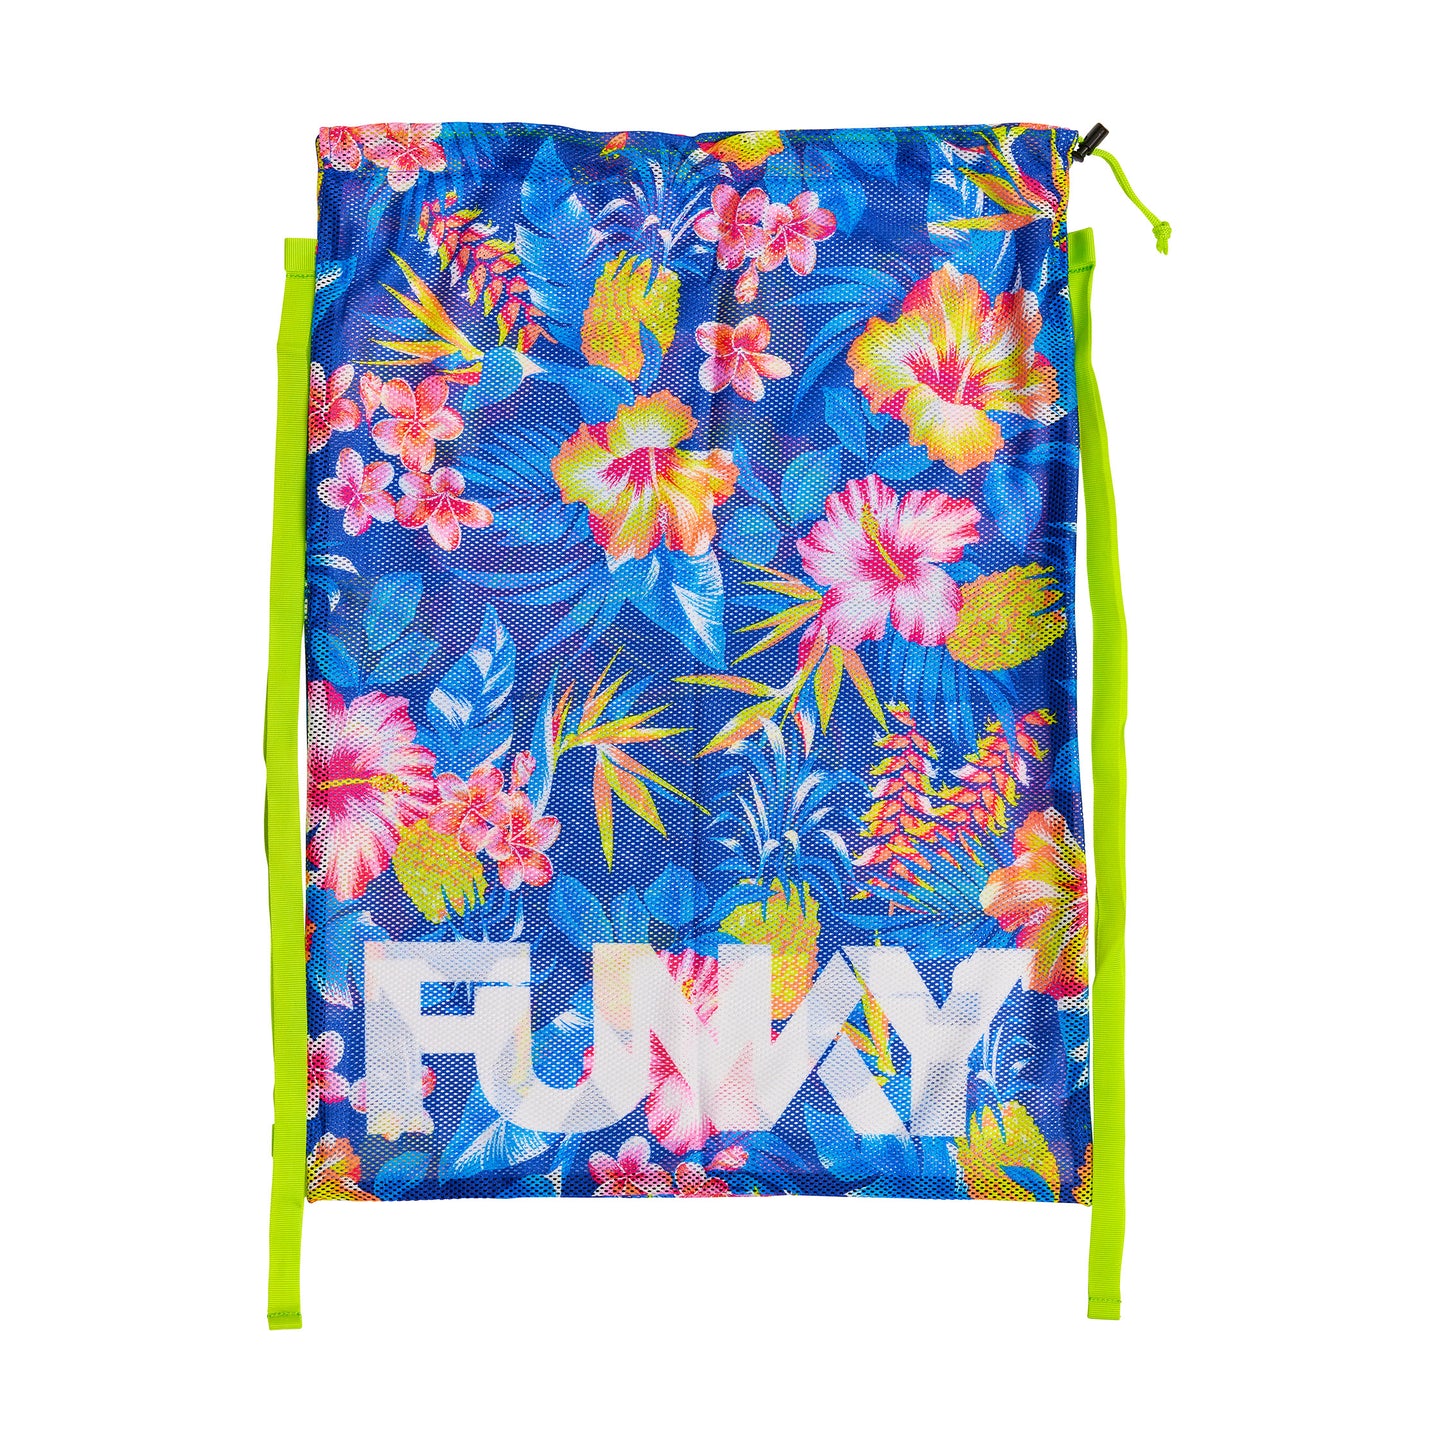 NEW! Funky Mesh Gear Bag In Bloom